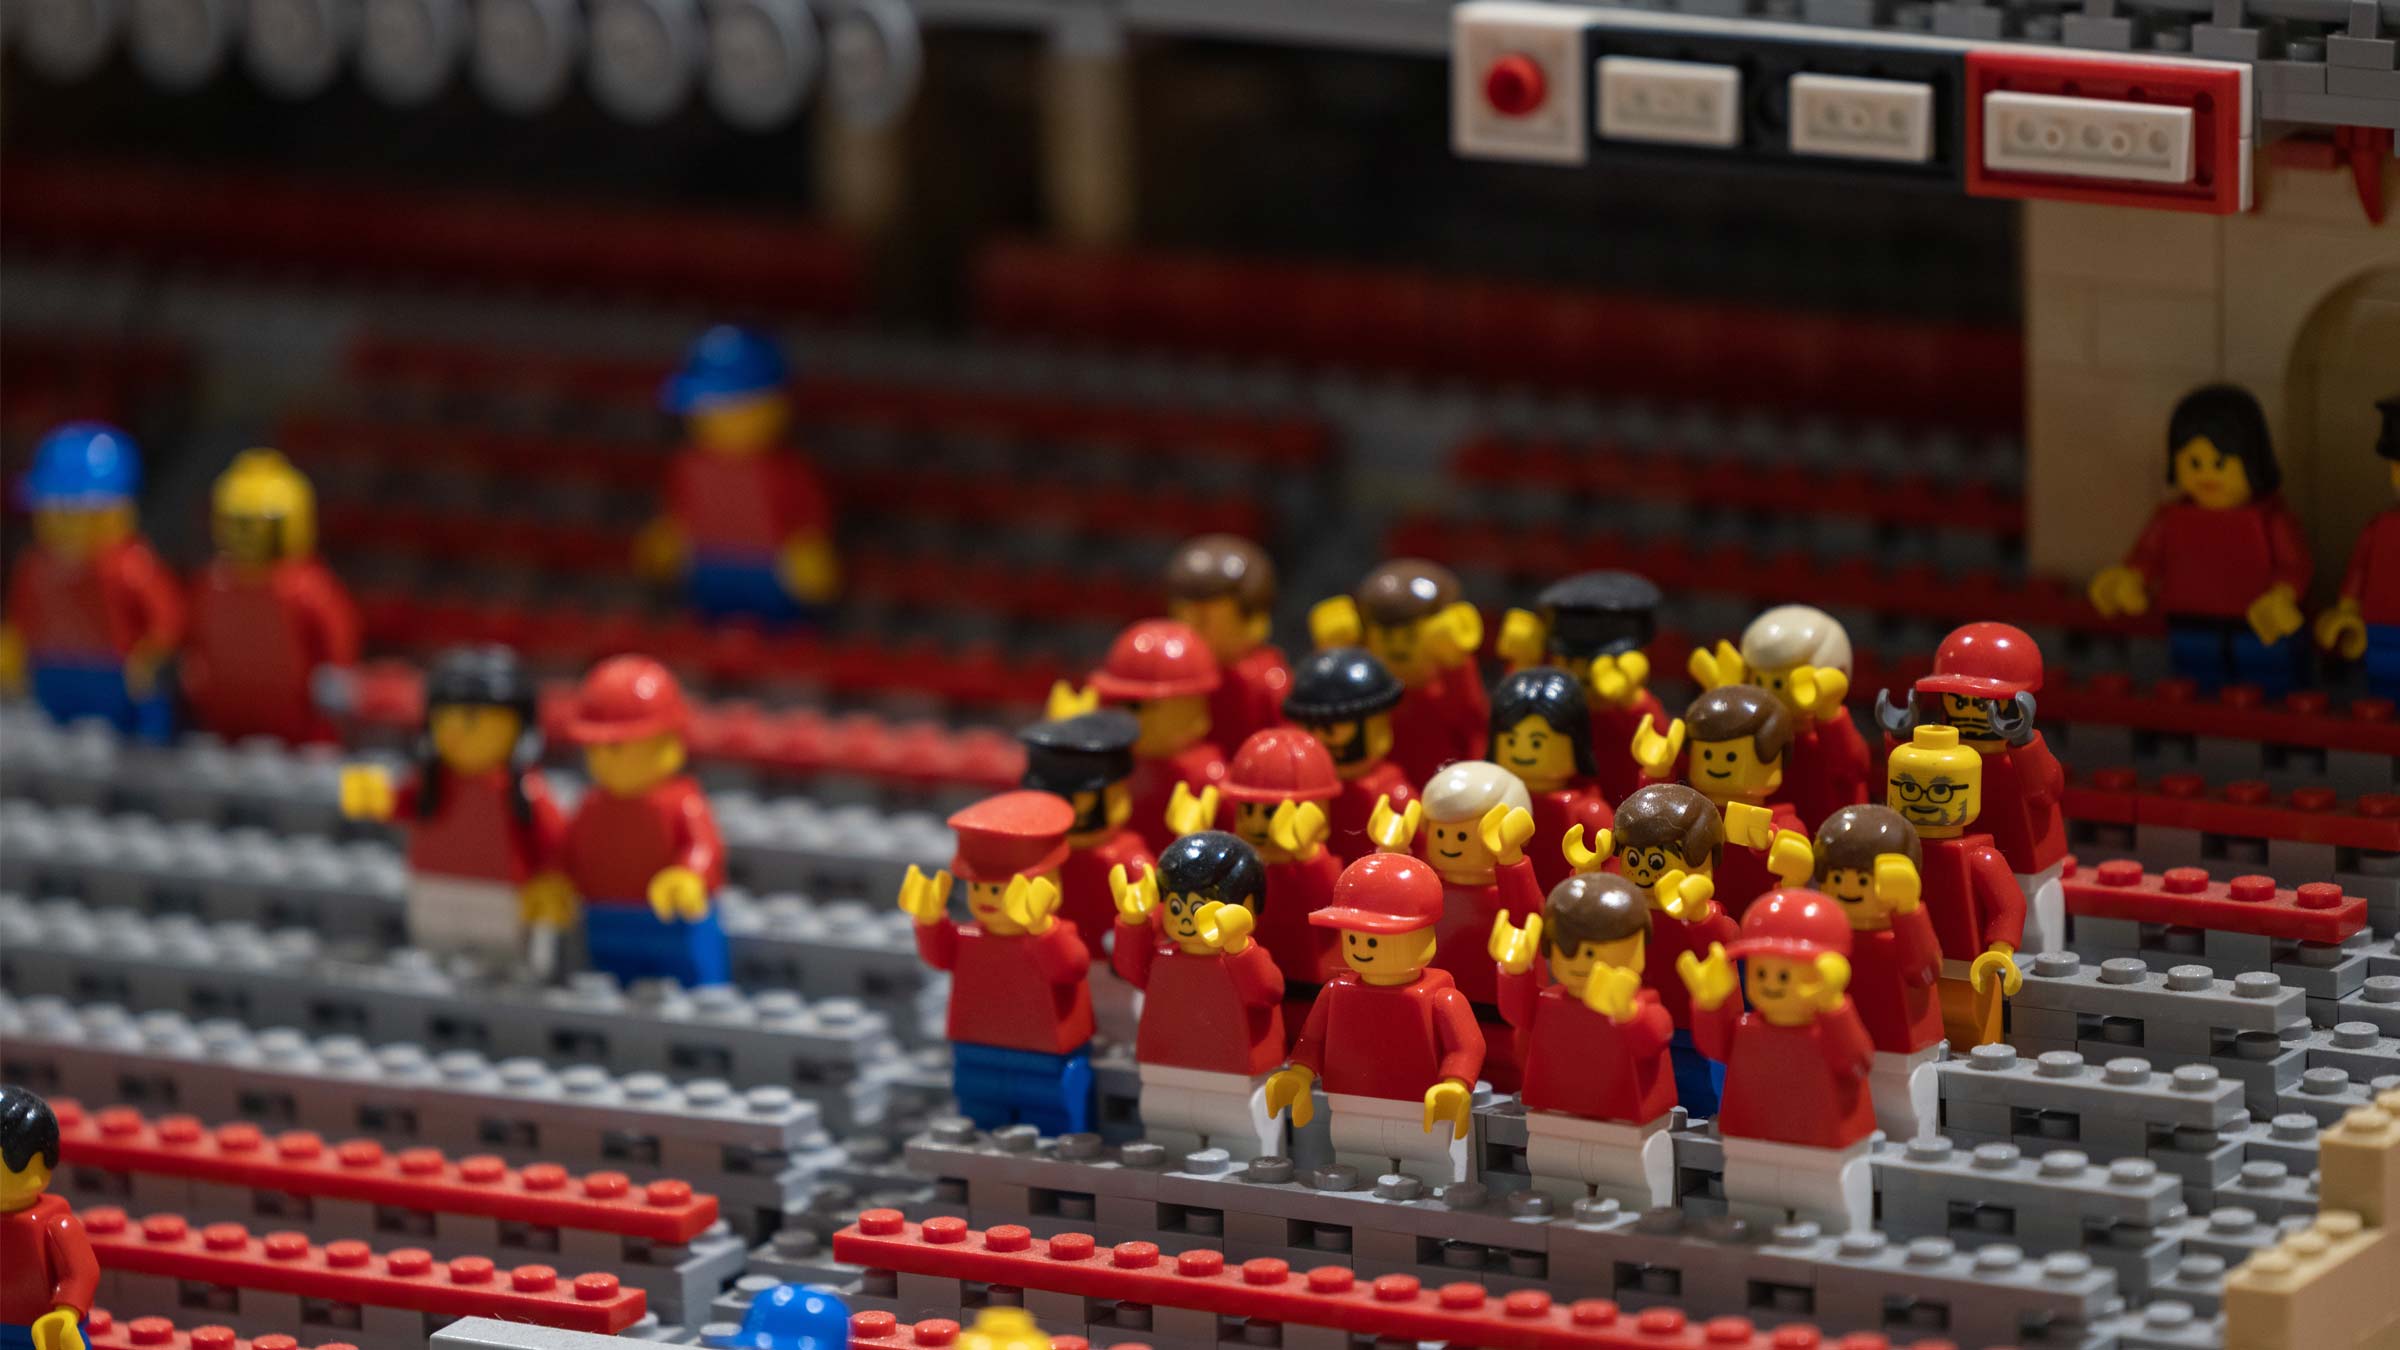 Lego figurines cheering in the Lego replica of Ohio Stadium